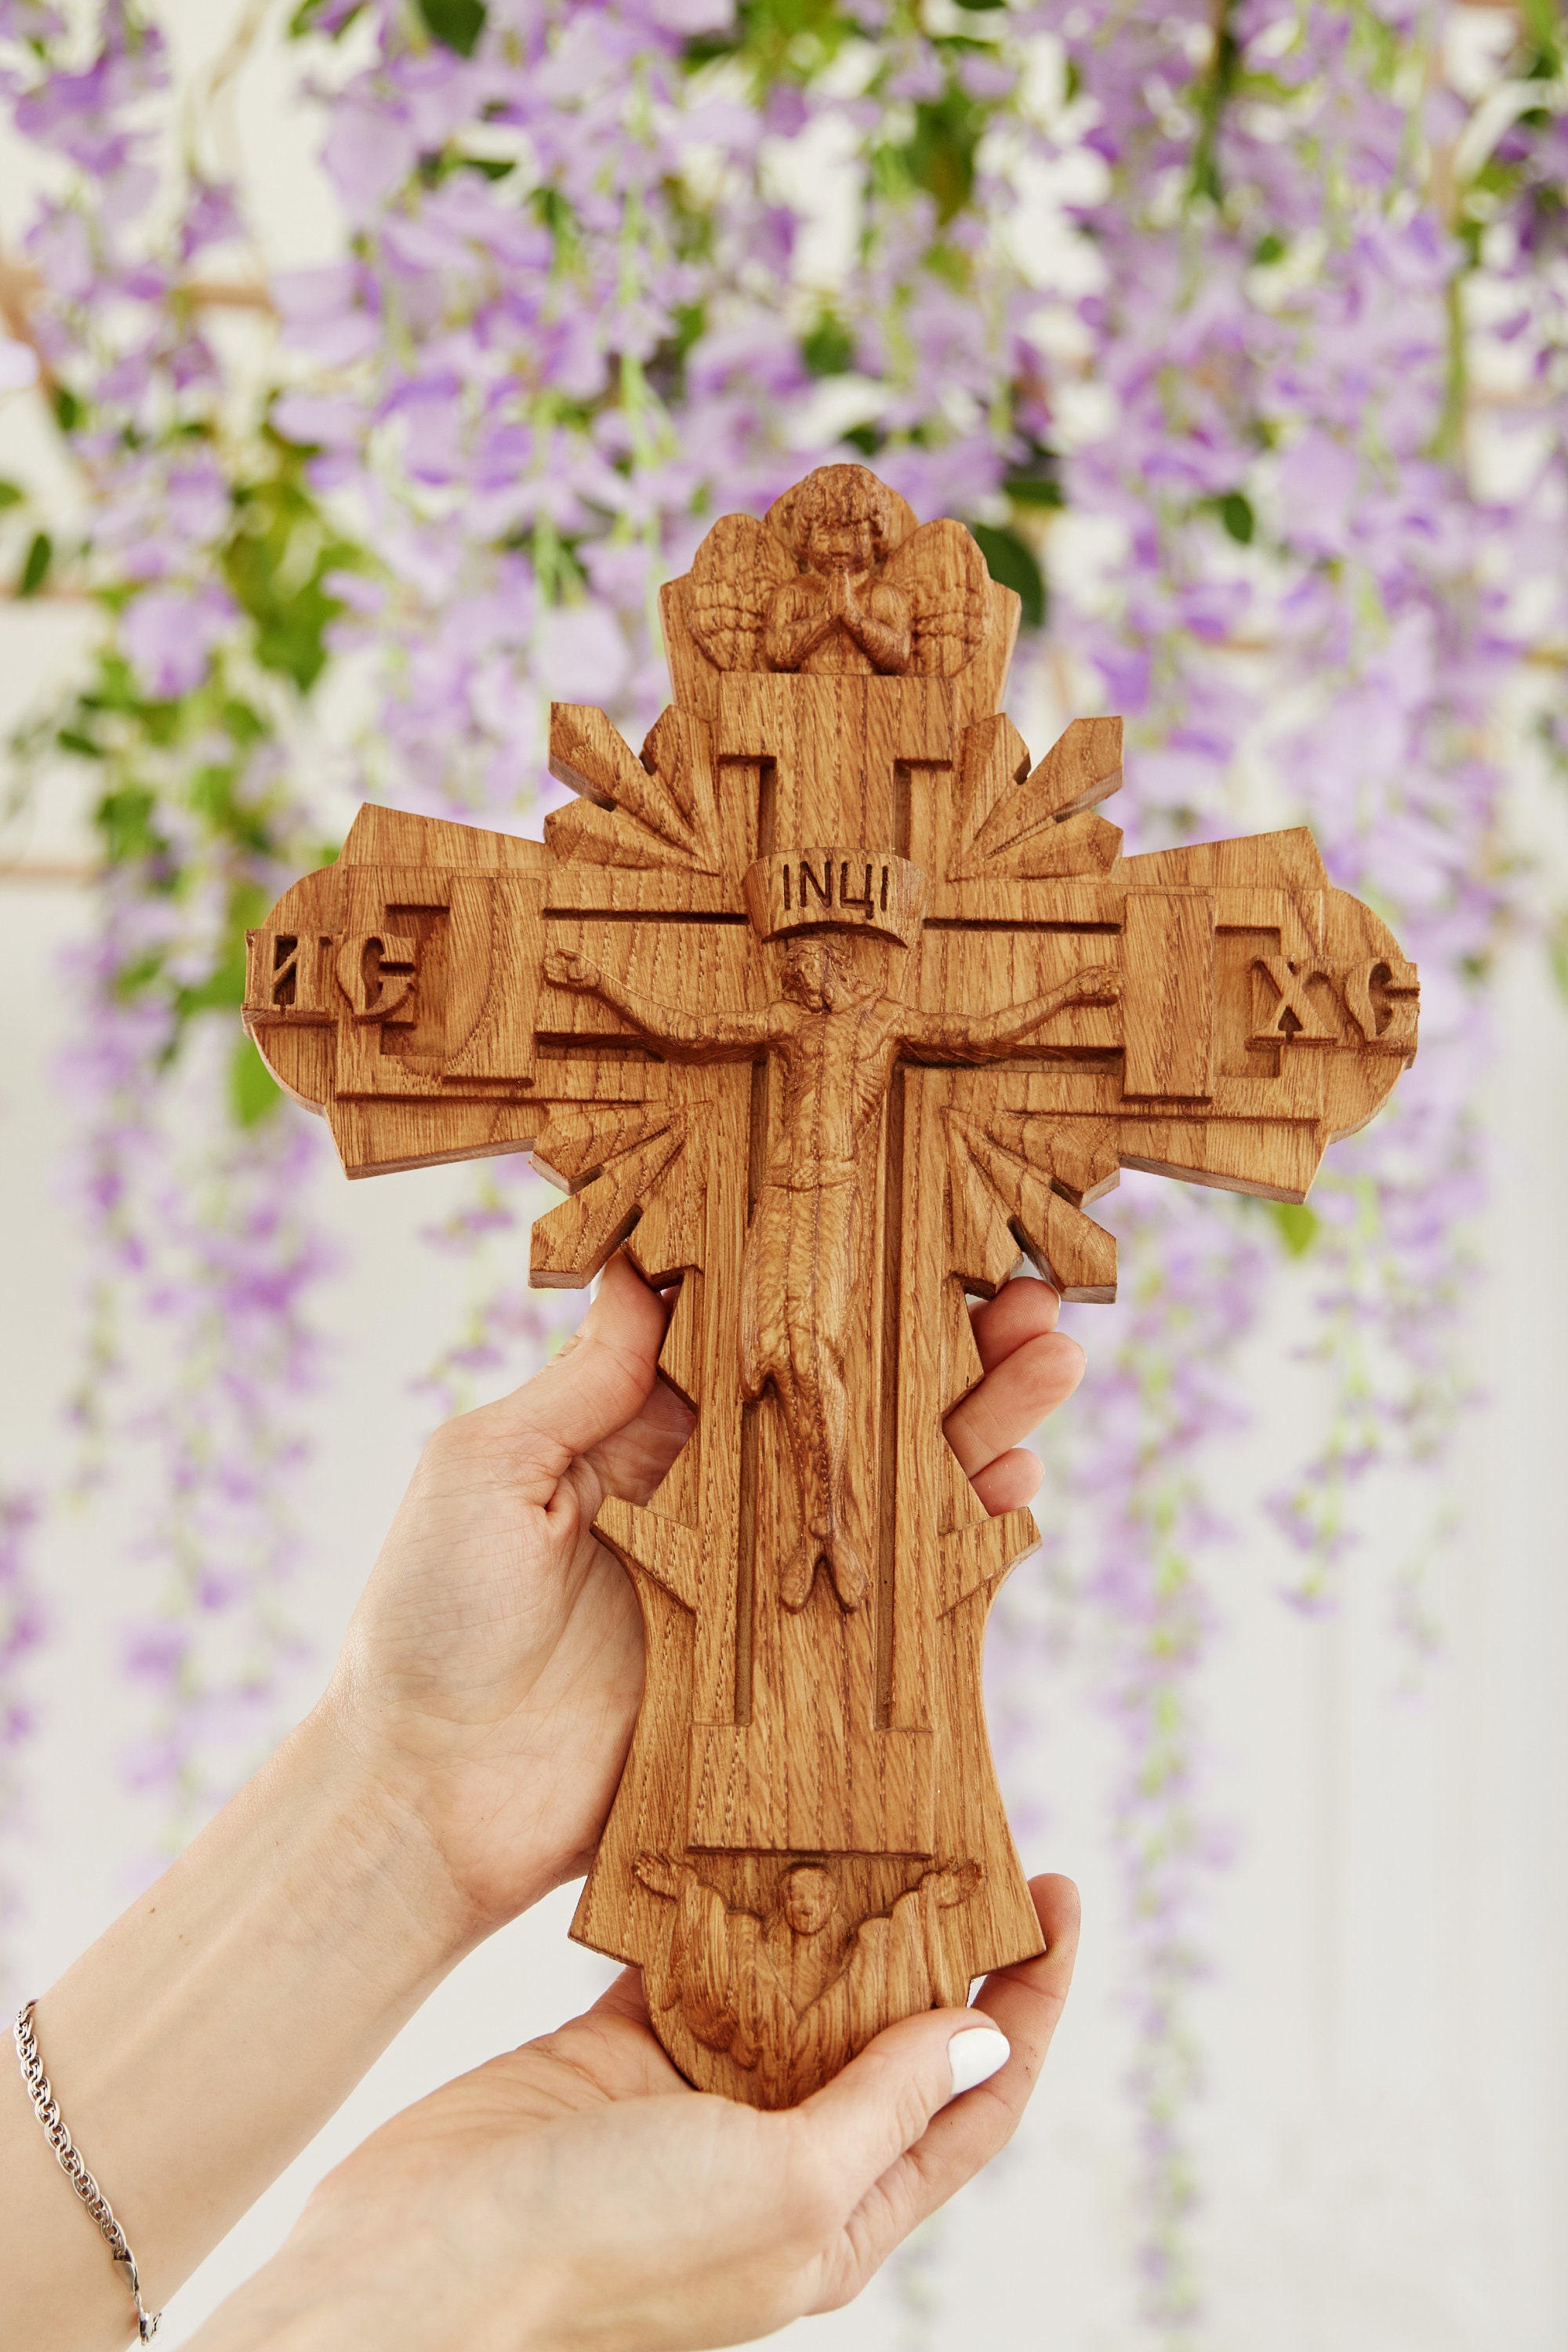 Cruz de pared Crucifijo de madera Talla de madera religiosa Cruz católica  Arte de pared religioso Decoración cristiana para el hogar -  México